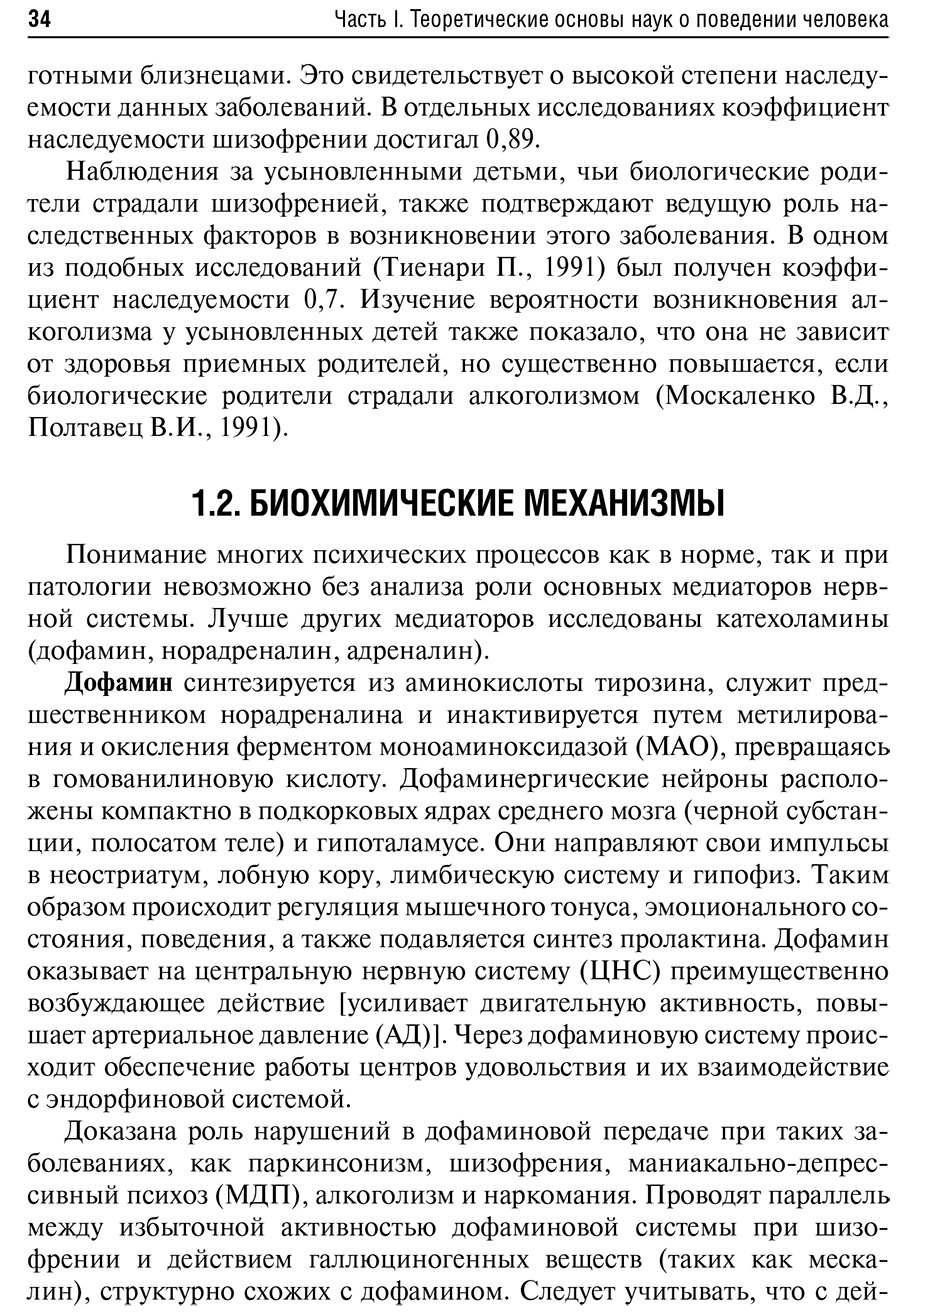 Пример станицы из книги "Психиатрия и медицинская психология: учебник" - Н. Н. Иванец